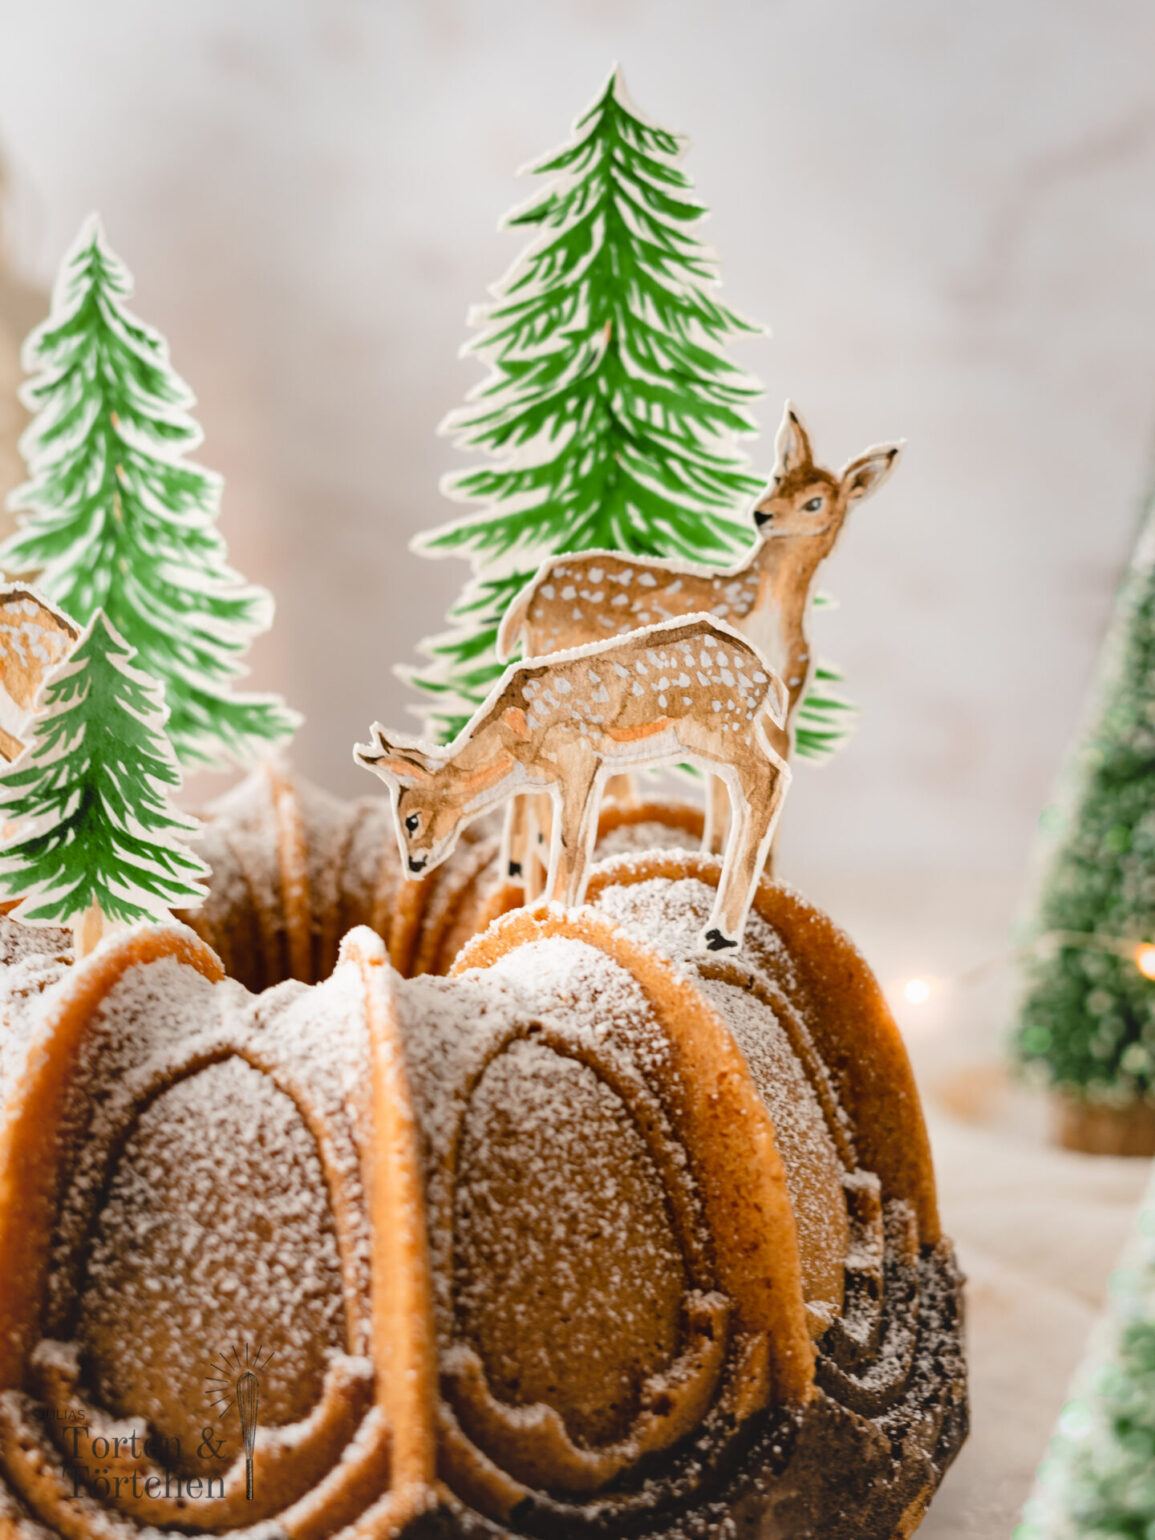 Winterliches Rezept für einen schnellen und einfachen Marmor Gewürzgugelhupf. Super saftig und mit kostenlosen Aquarell Caketoppern zum Ausdrucken und dekorieren. #Weihnachtsbäckerei #gugelhupf #Marmorkuchen #Caketopper #Weihnachtskuchen #Weihnachtstorte